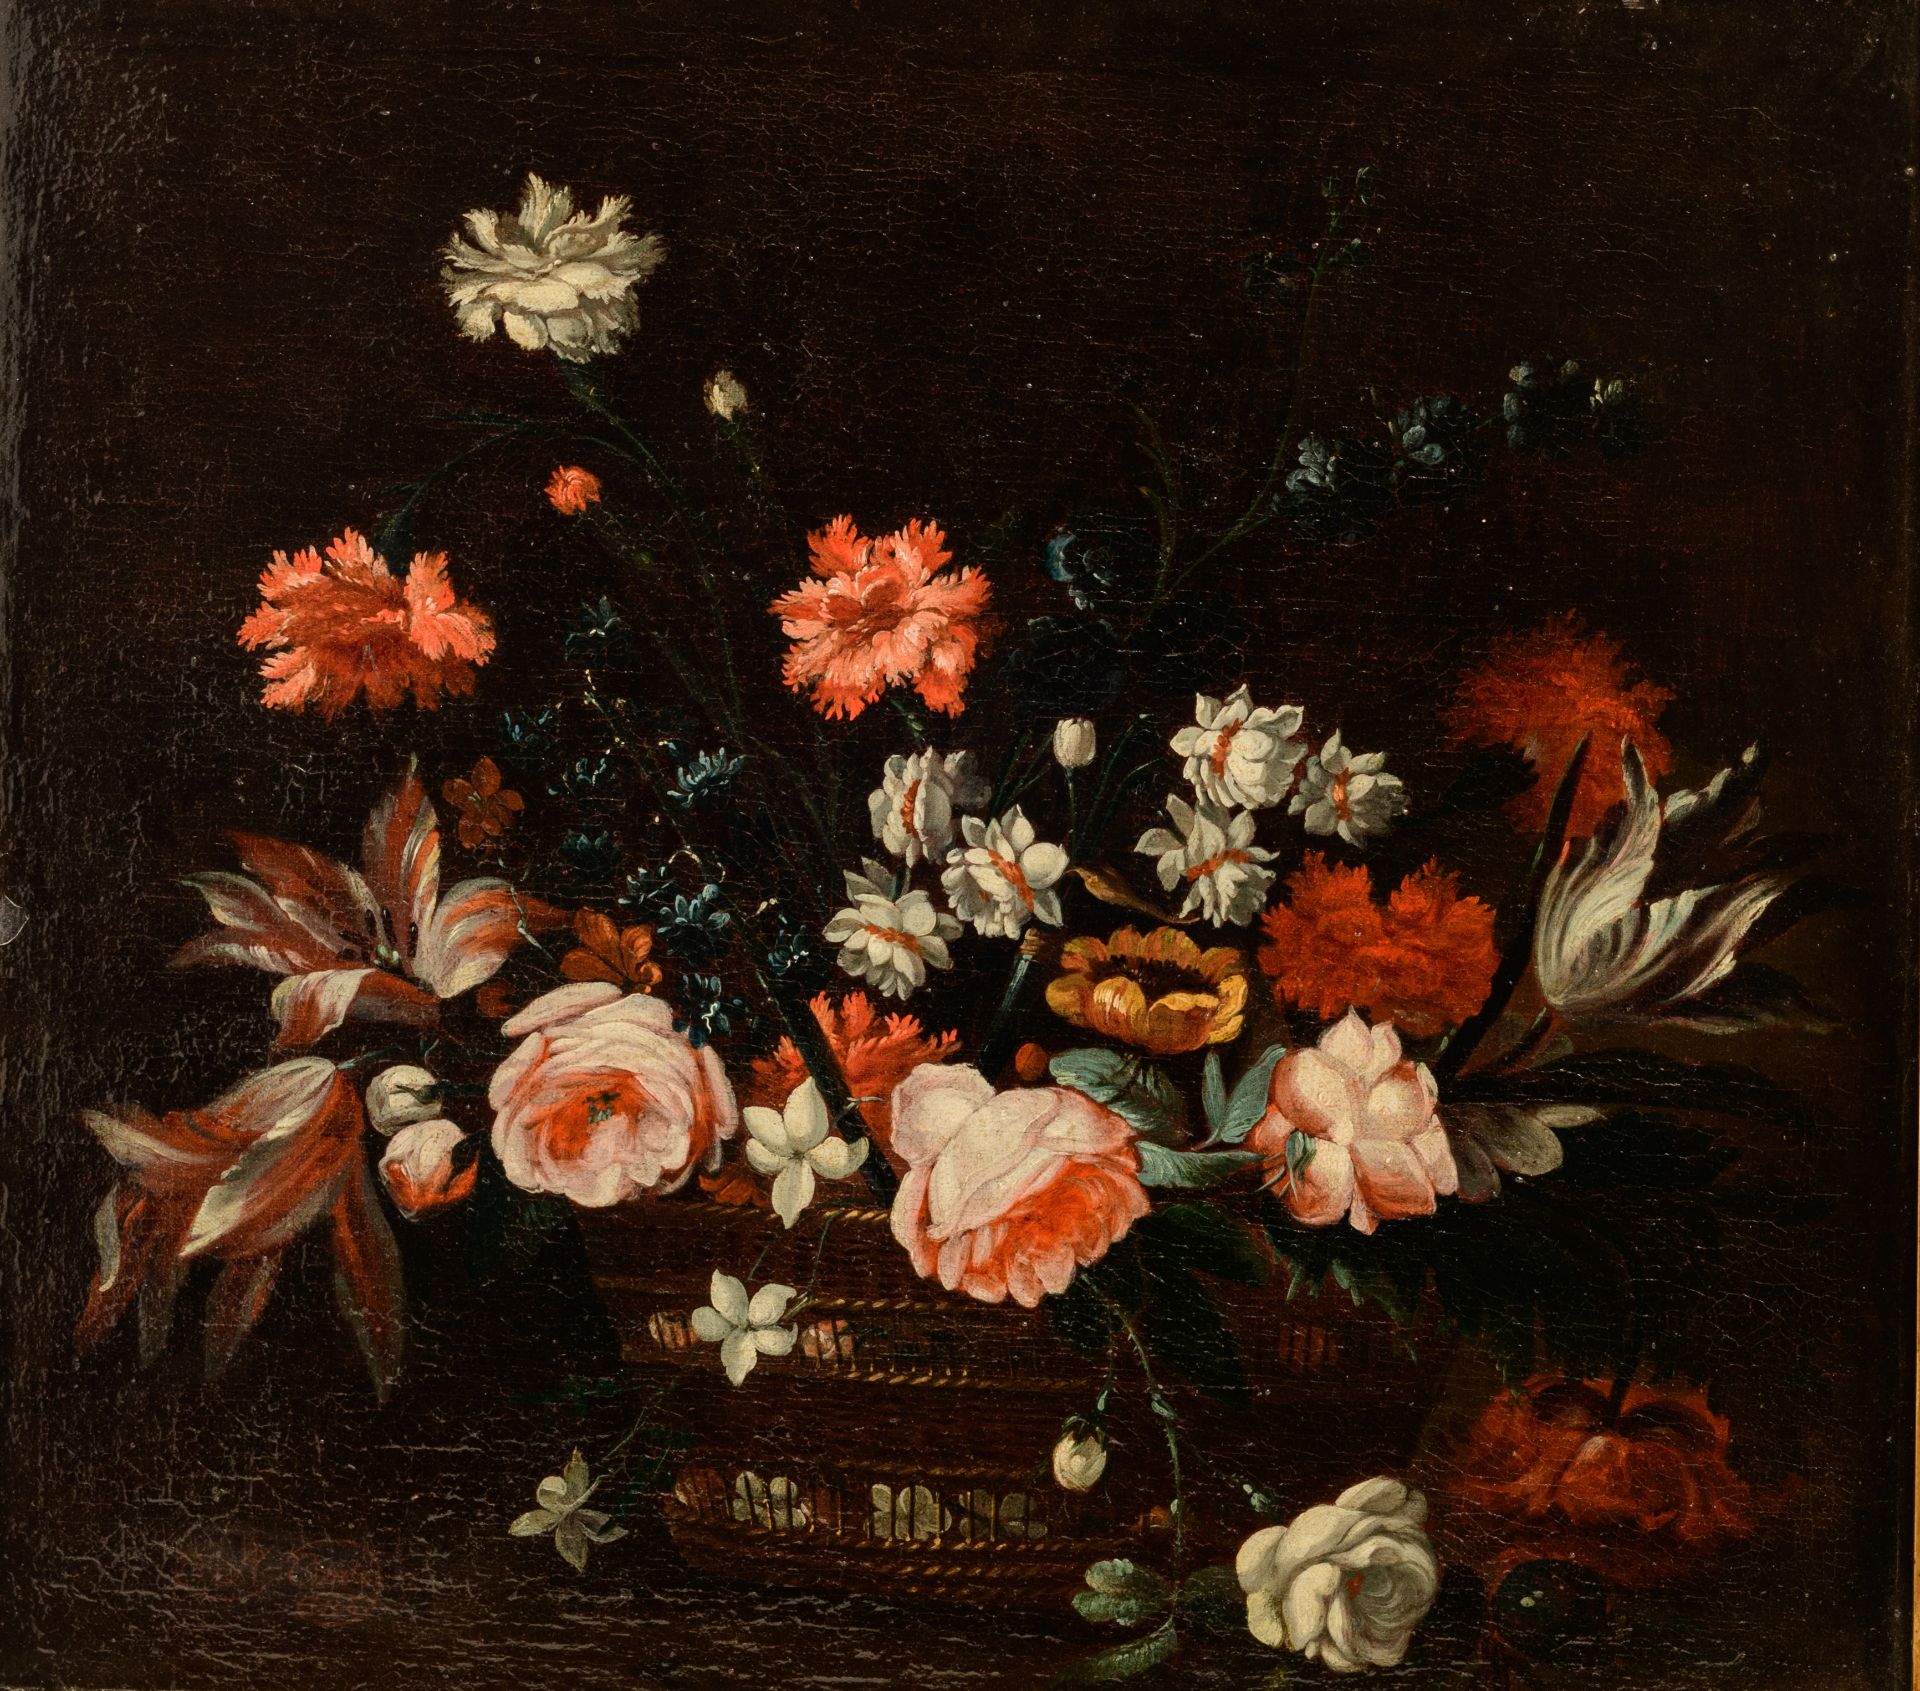 Adriaen Coorte (c. 1660-1723), flower still life, 1700, oil on canvas, 60 x 66 cm